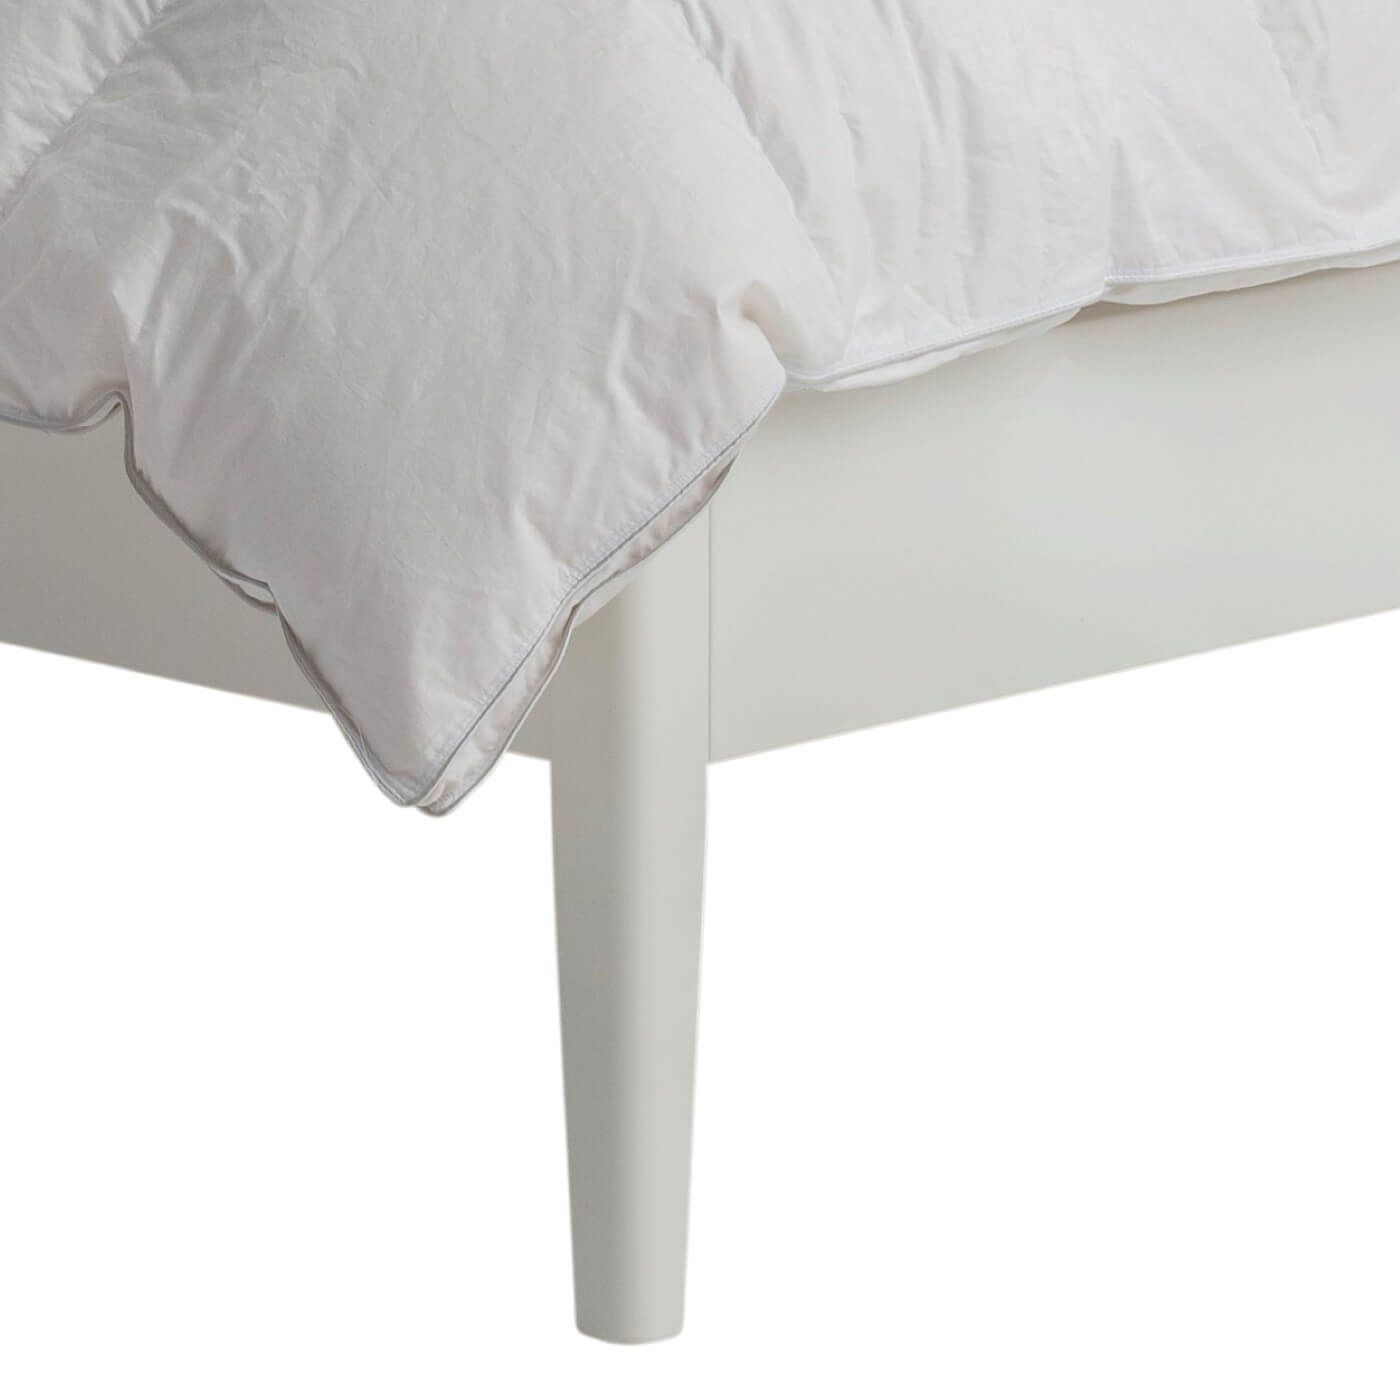 Łóżko małżeńskie drewniane białe MATINEA. Wysoka drewniana nóżka łóżka do sypialni 160x200 z dużymi ażurowym białym zagłówkiem. Nowoczesne łóżko z drewna brzozy lakierowanej na kolor biały mat. Styl skandynawski